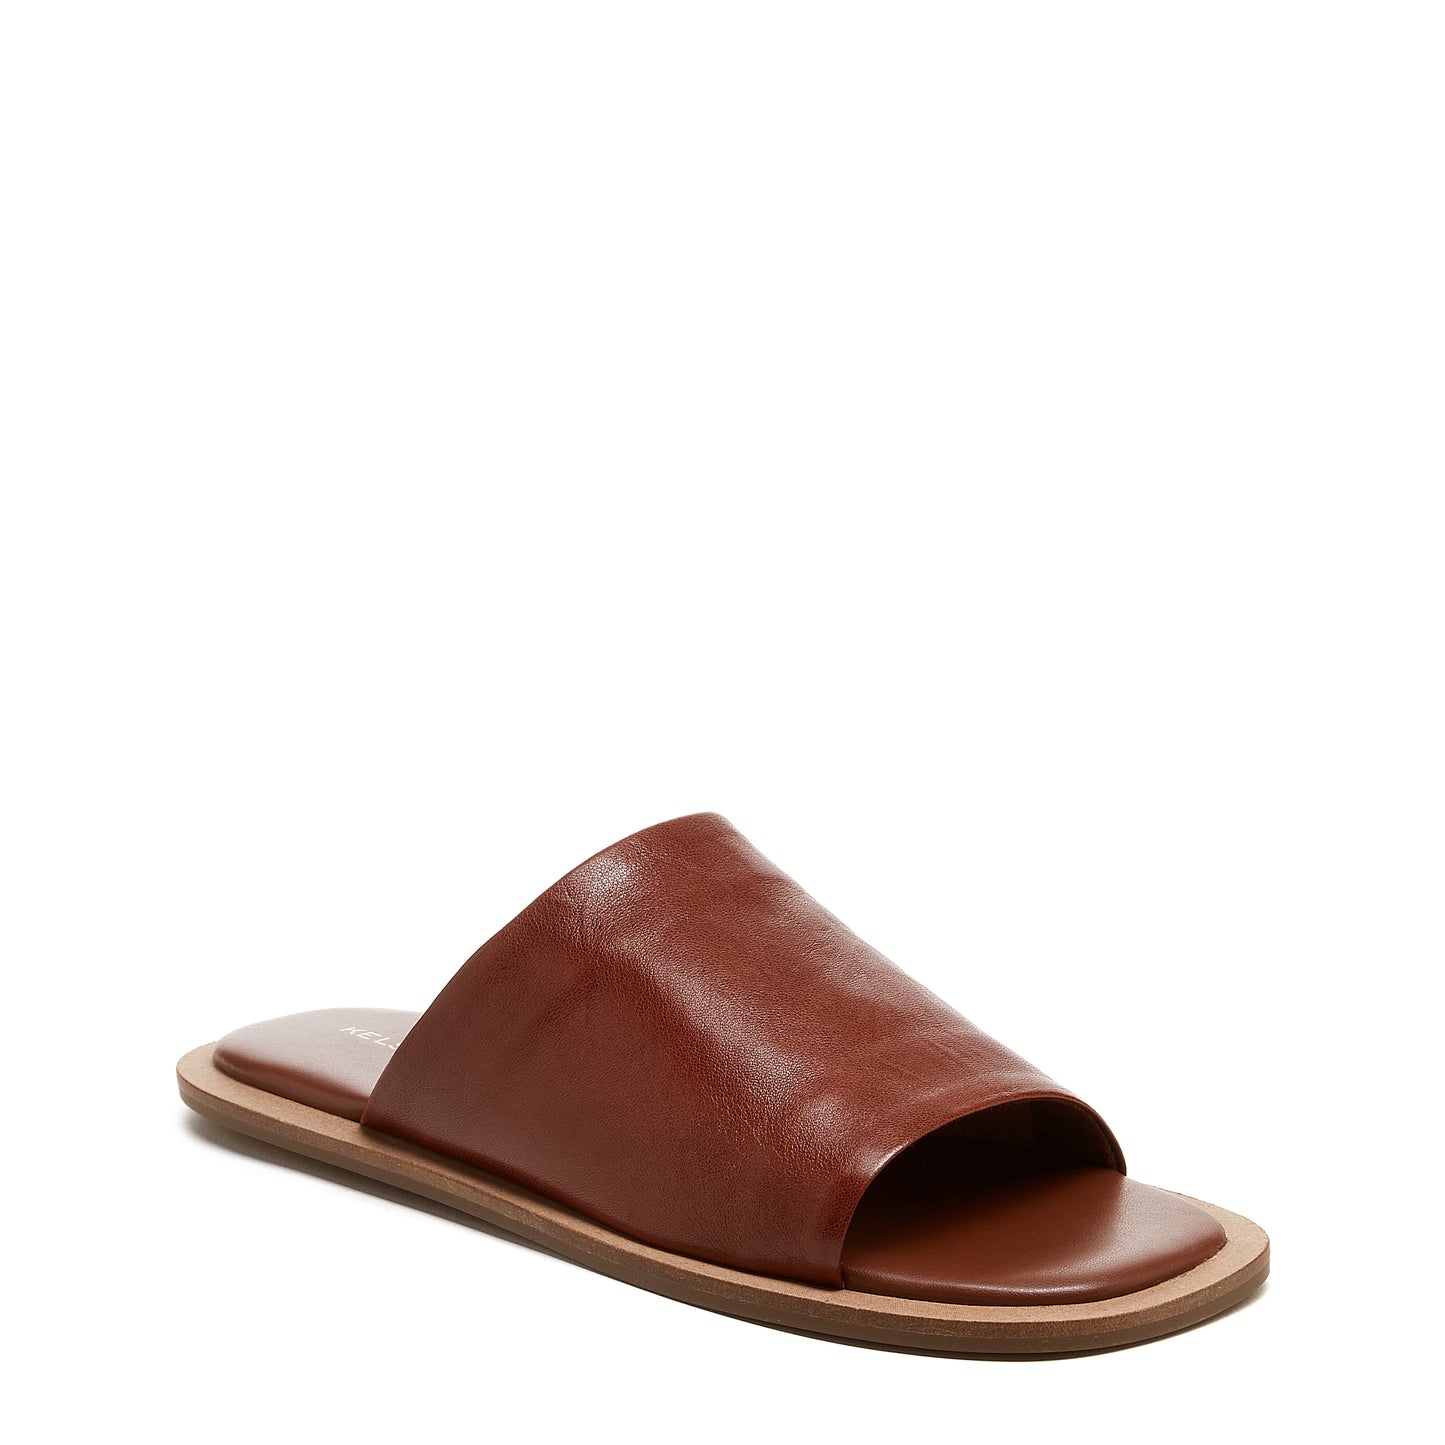 Benny Cider Slide Sandals